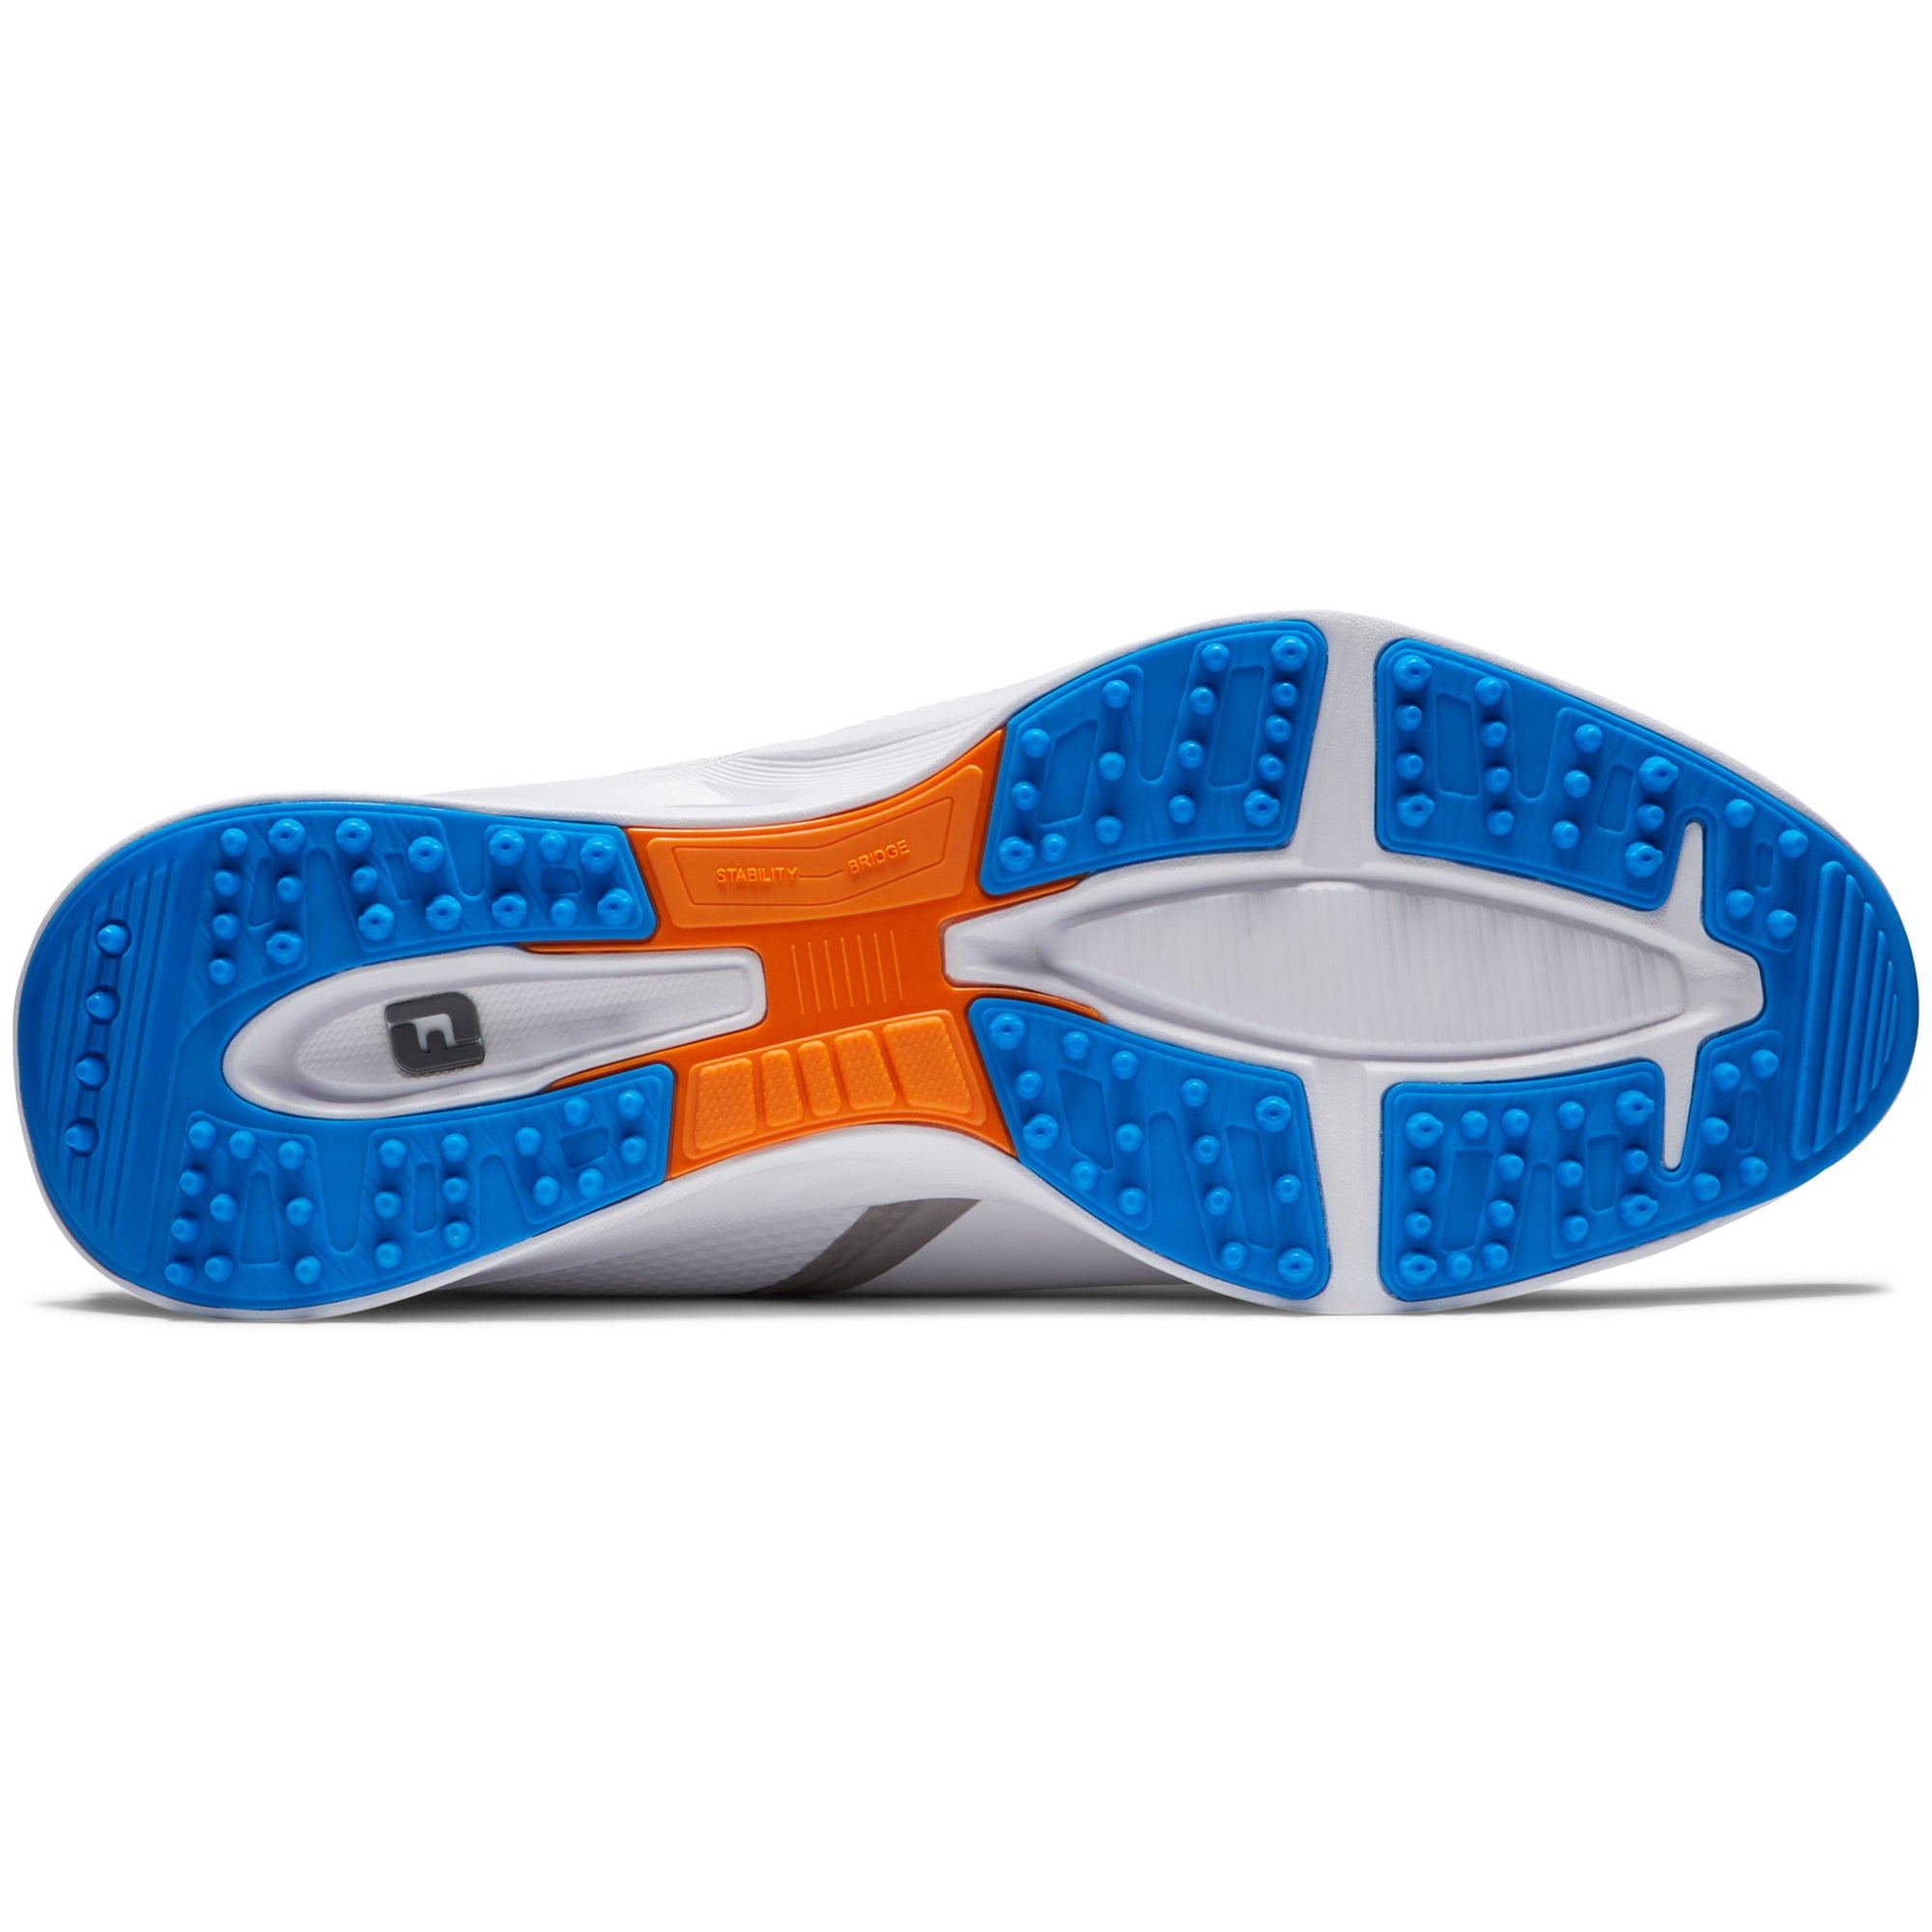 footjoy-fj-fuel-golf-shoes-55440-white-white-orange